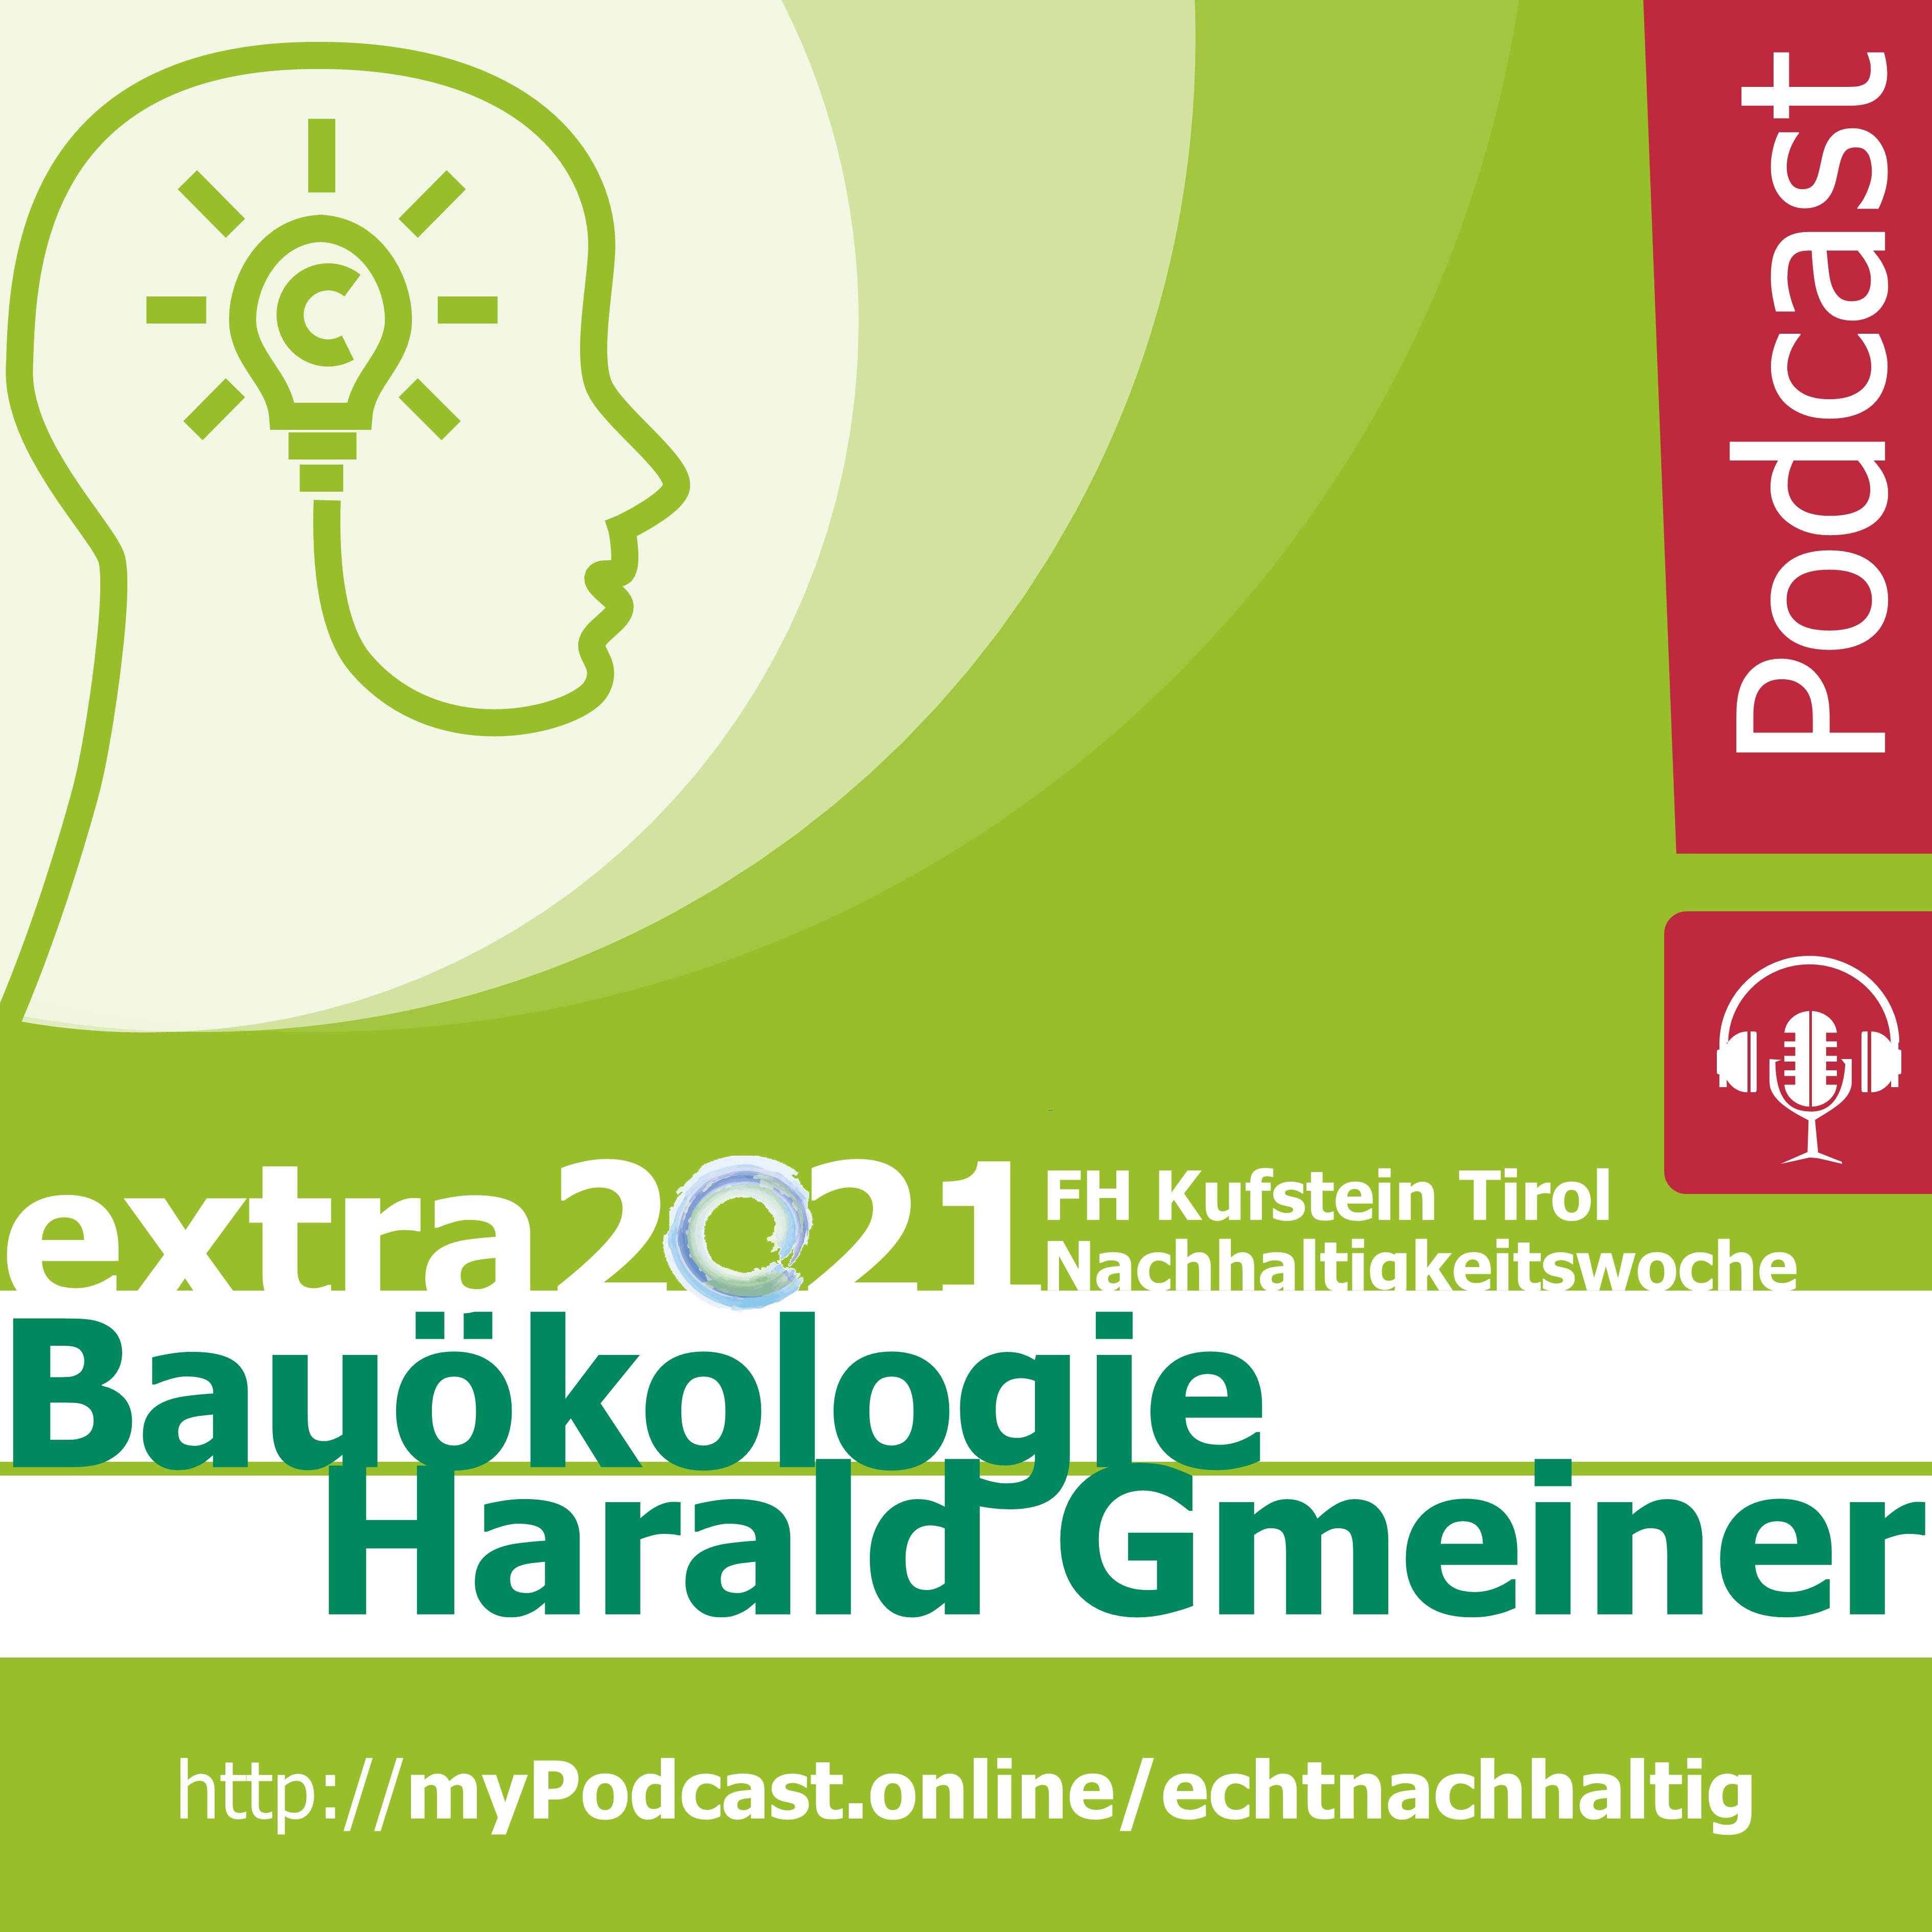 Episode 4 - EXTRA@Nachhaltigkeitswoche2021: Haben wir genug Ressourcen? Karla Strobl im Gespräch mit Harald Gmeiner